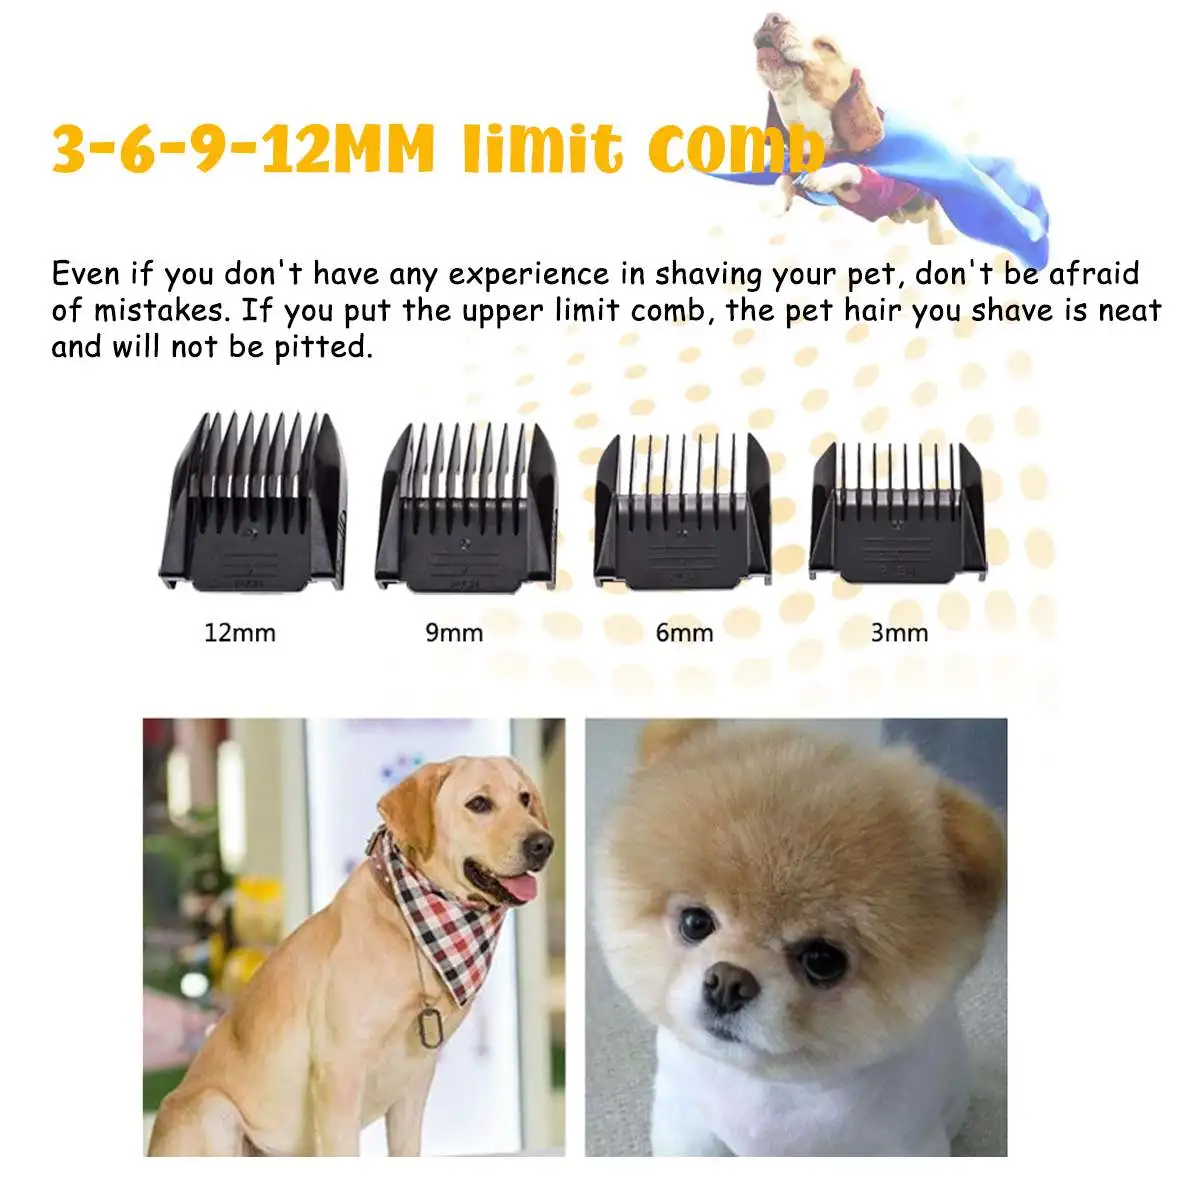 Profesionale USB Câine Tuns Trimmer Electric pentru animale de Companie Îngrijire Instrument Reîncărcabilă Cat aparat de Ras Tăietor de Păr de Câine Masina Tunsoare